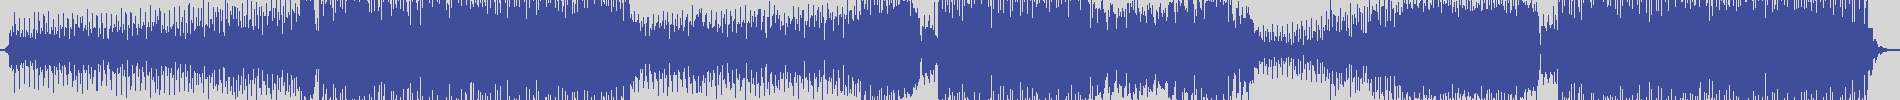 suxess [SX023] Dyson Kellerman - Don't You Leave Me [Radio Edit] audio wave form